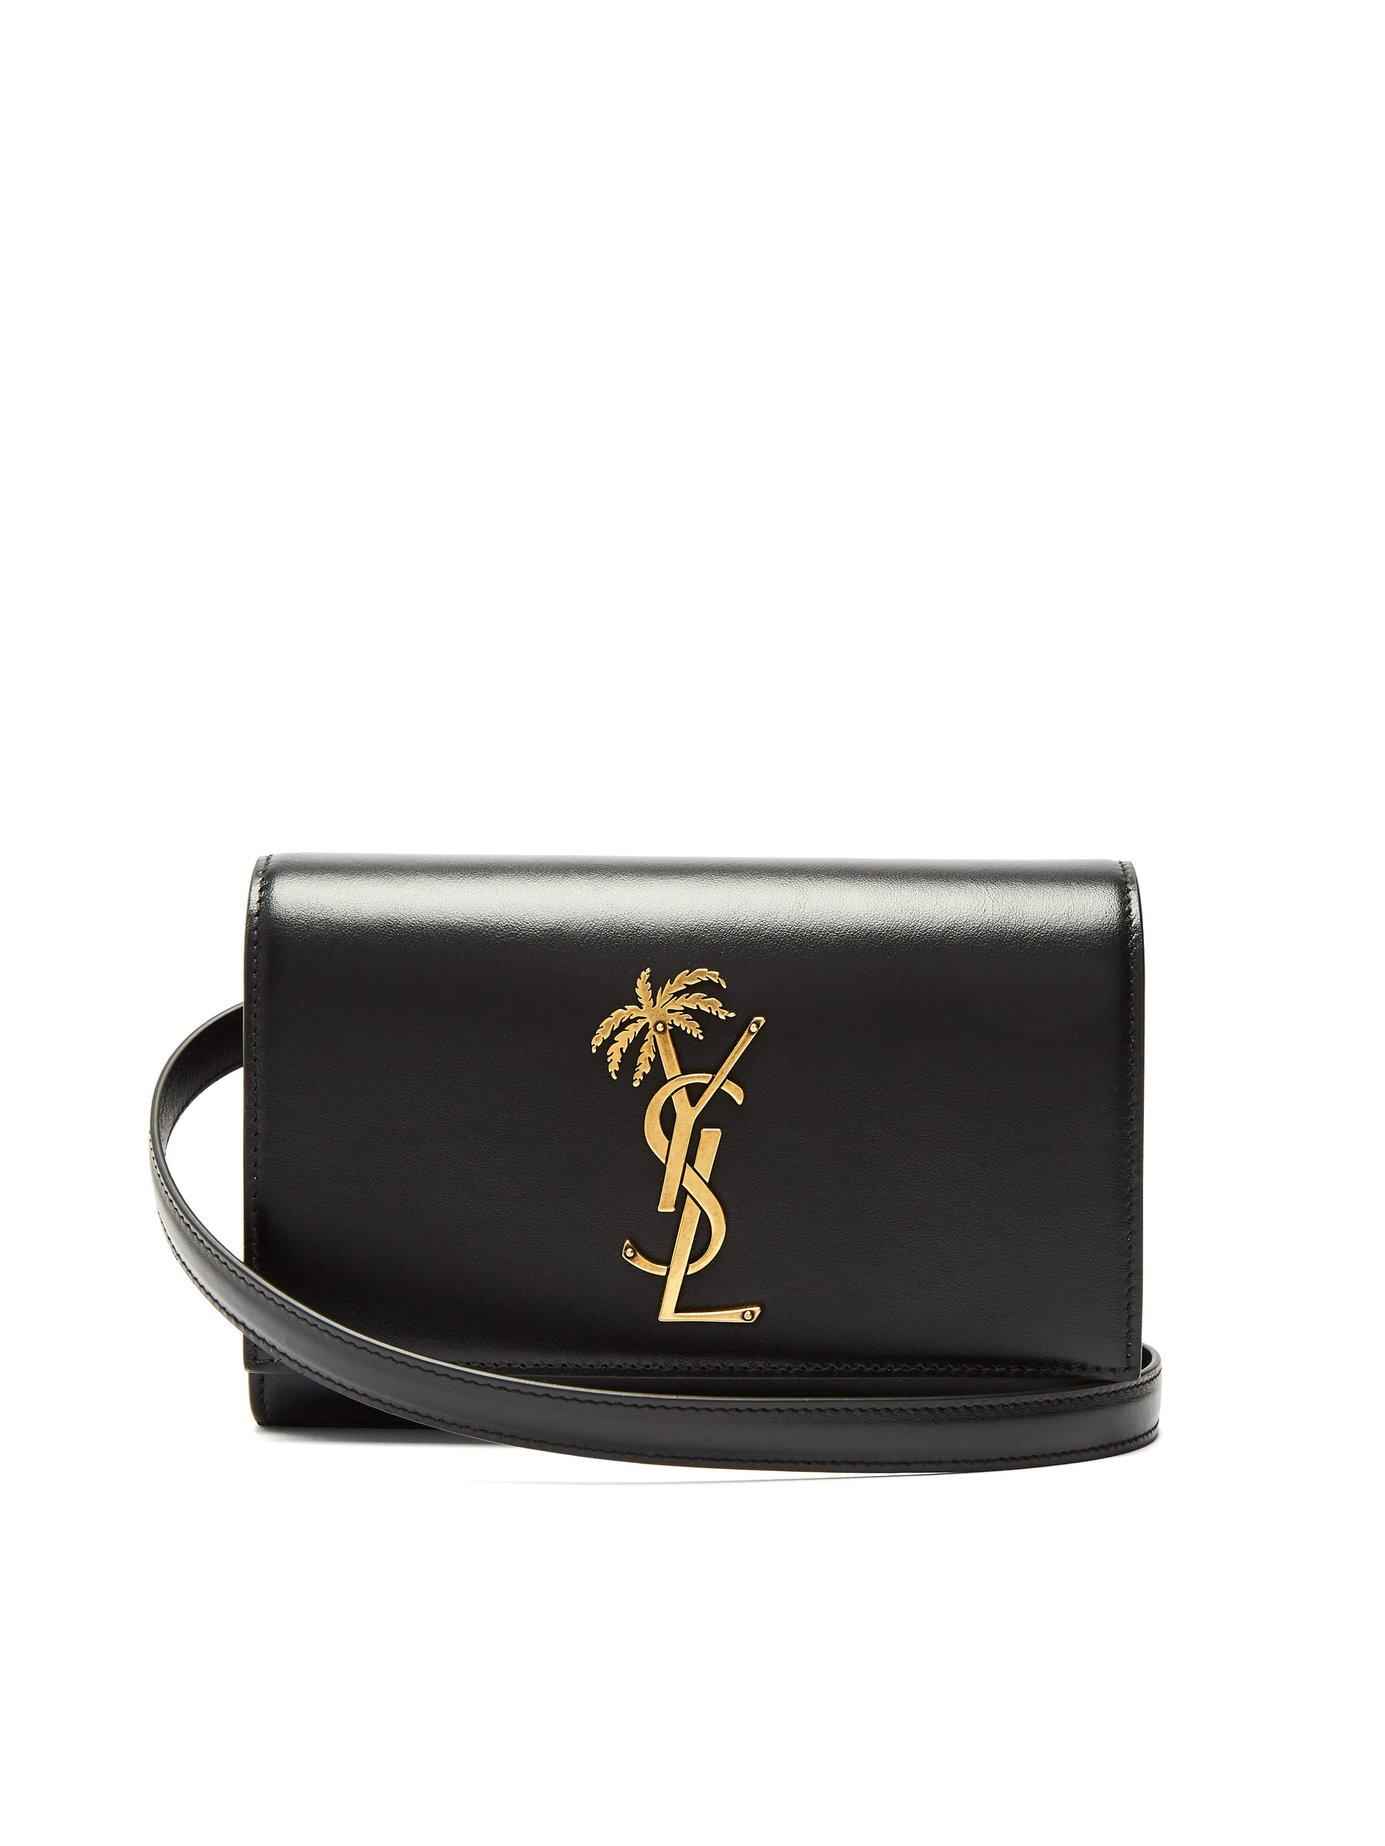 New Authentic Saint Laurent Monogram Kate Leather Belt Bag Size 85